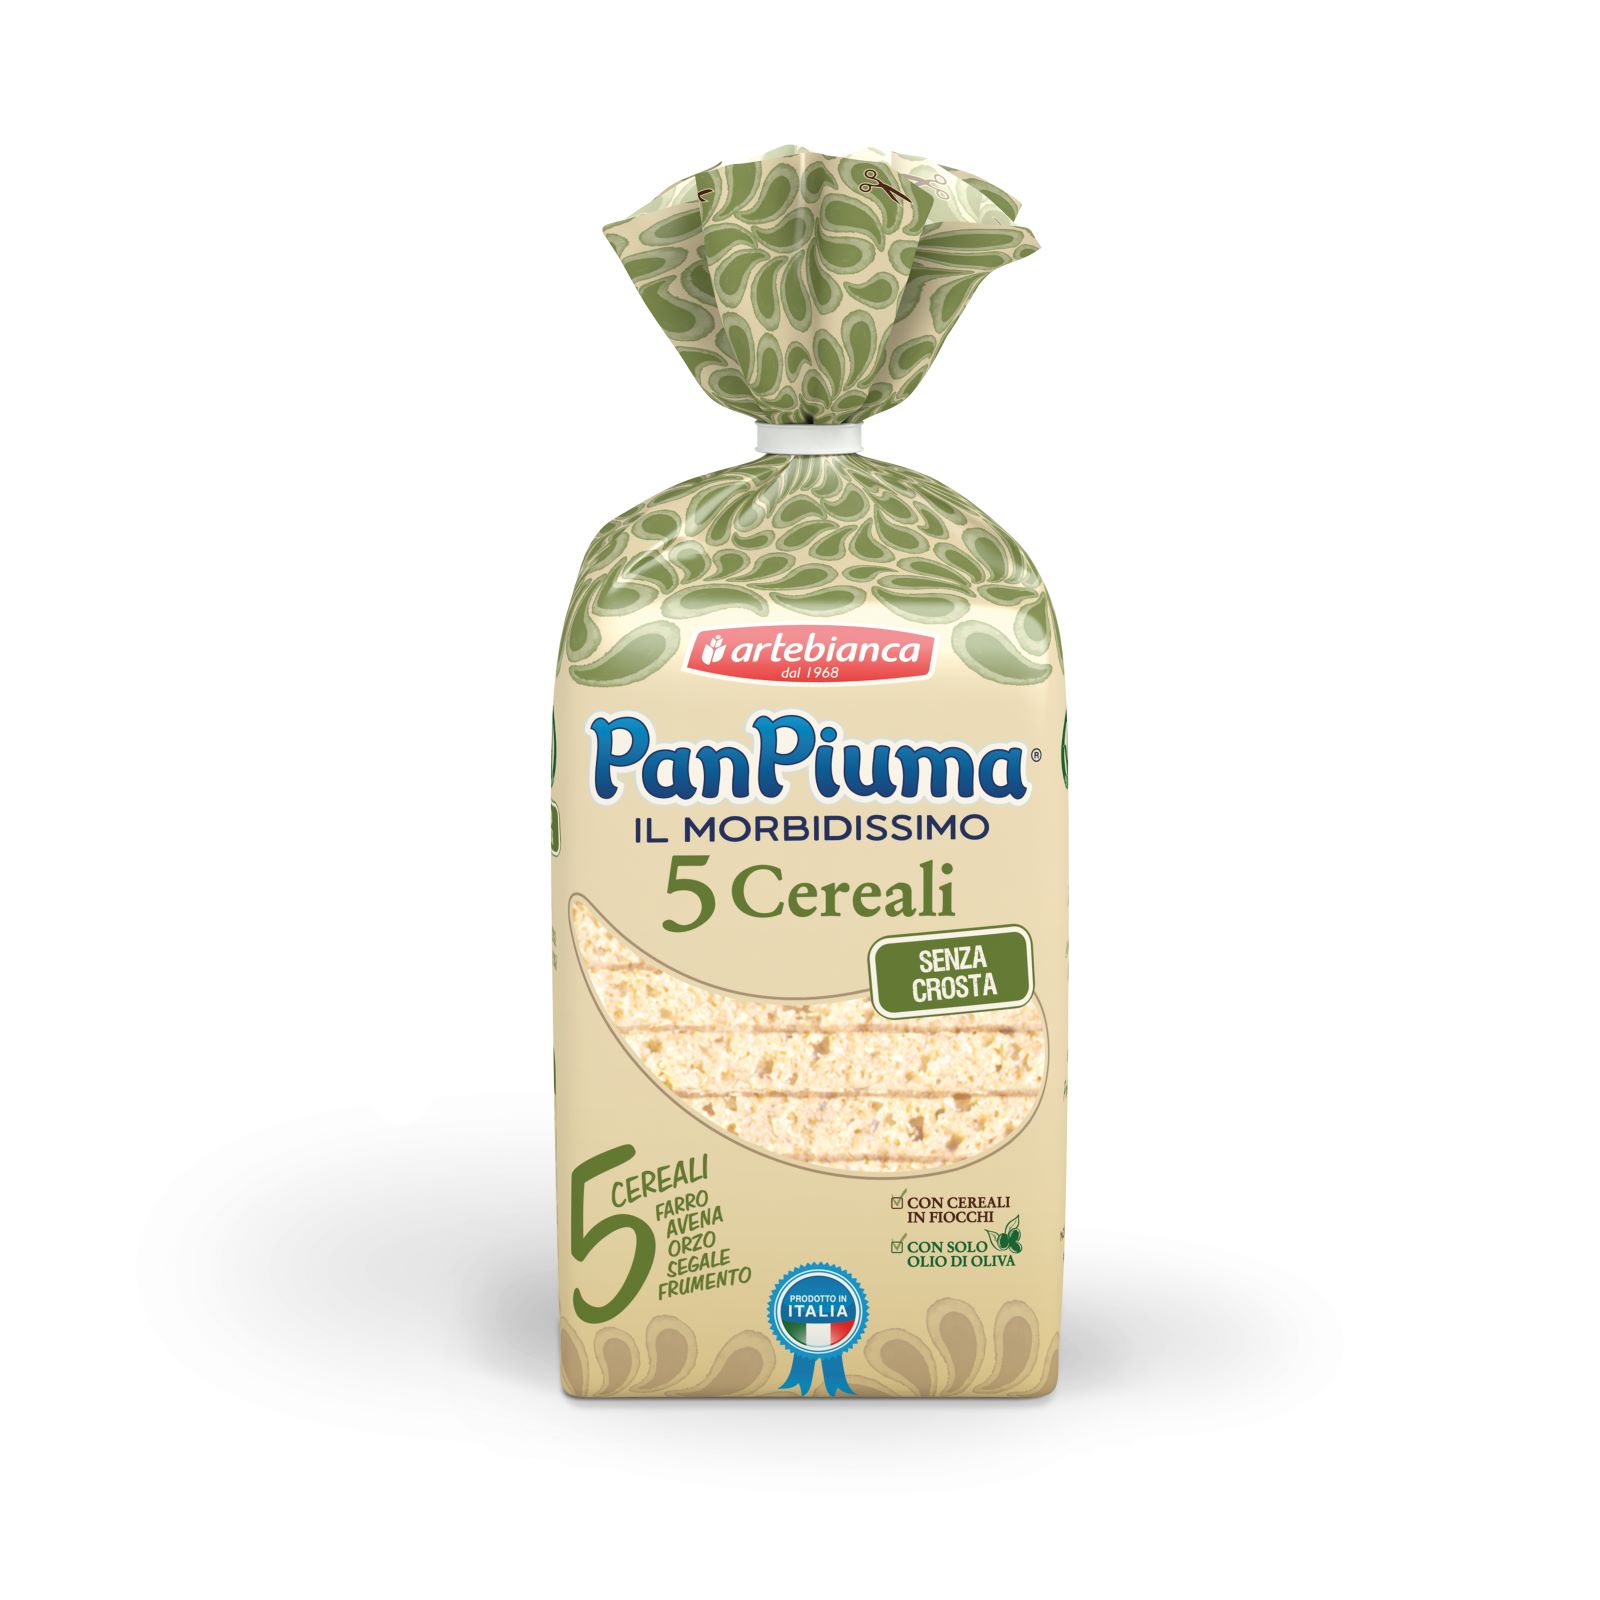 Green Retail  - Pan Piuma lancia la linea forno in due referenze: farro e 5 cereali 